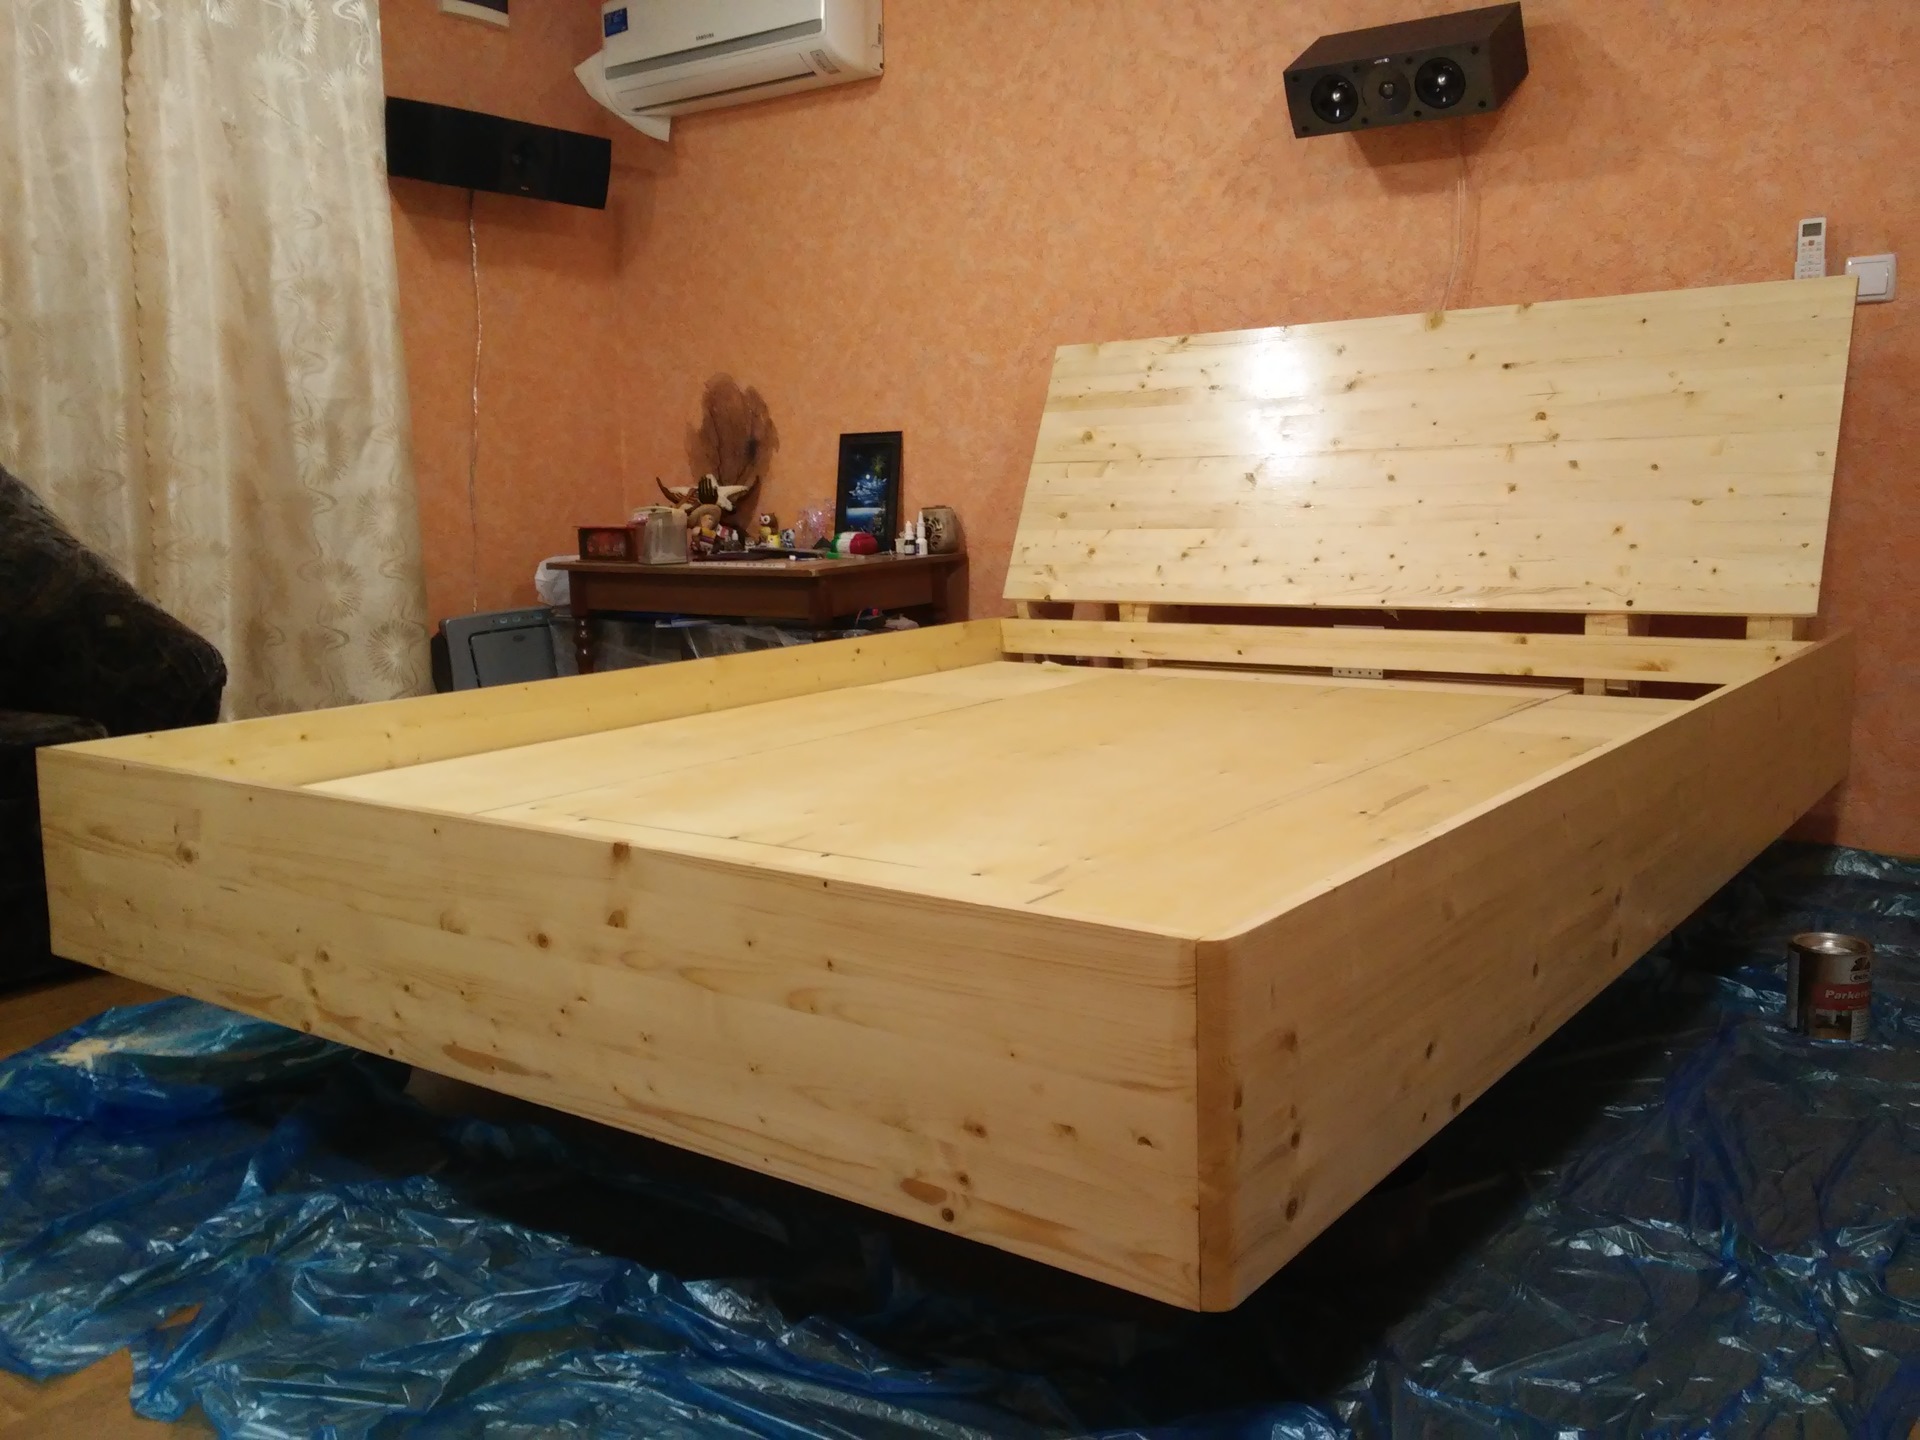 деревянные соединения в кровати